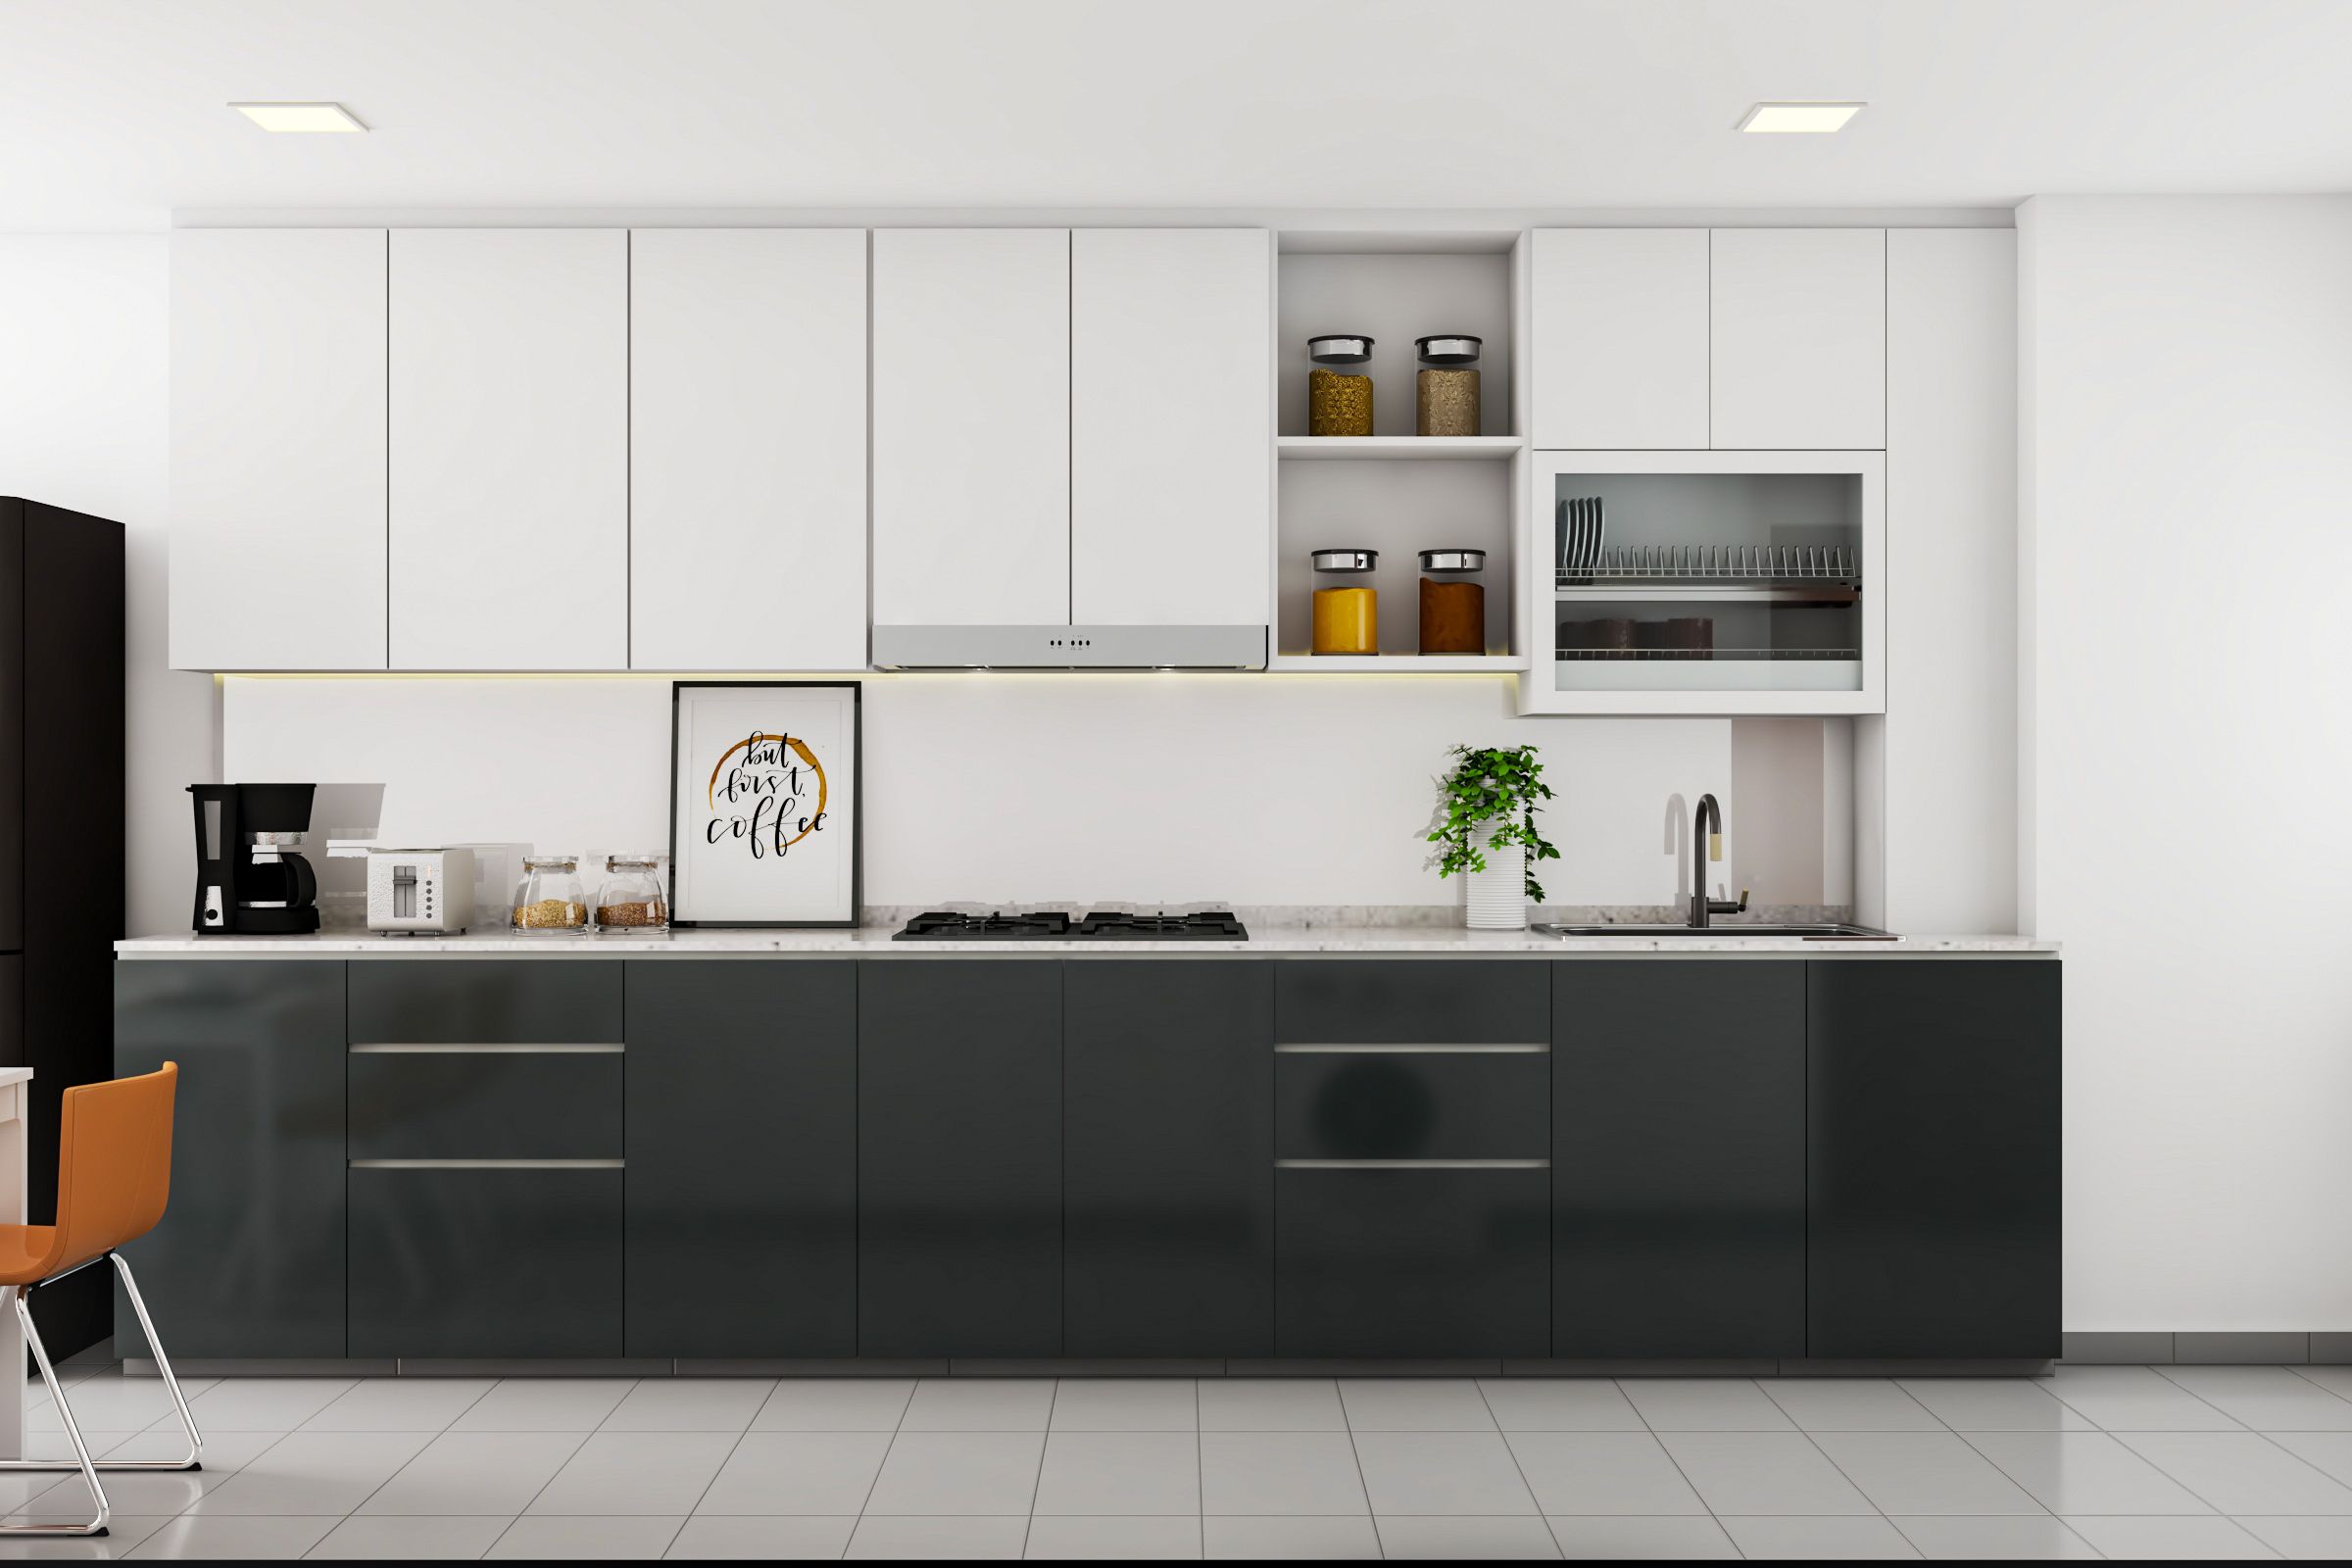 Monochromatic Black And White Kitchen Cabinet Design